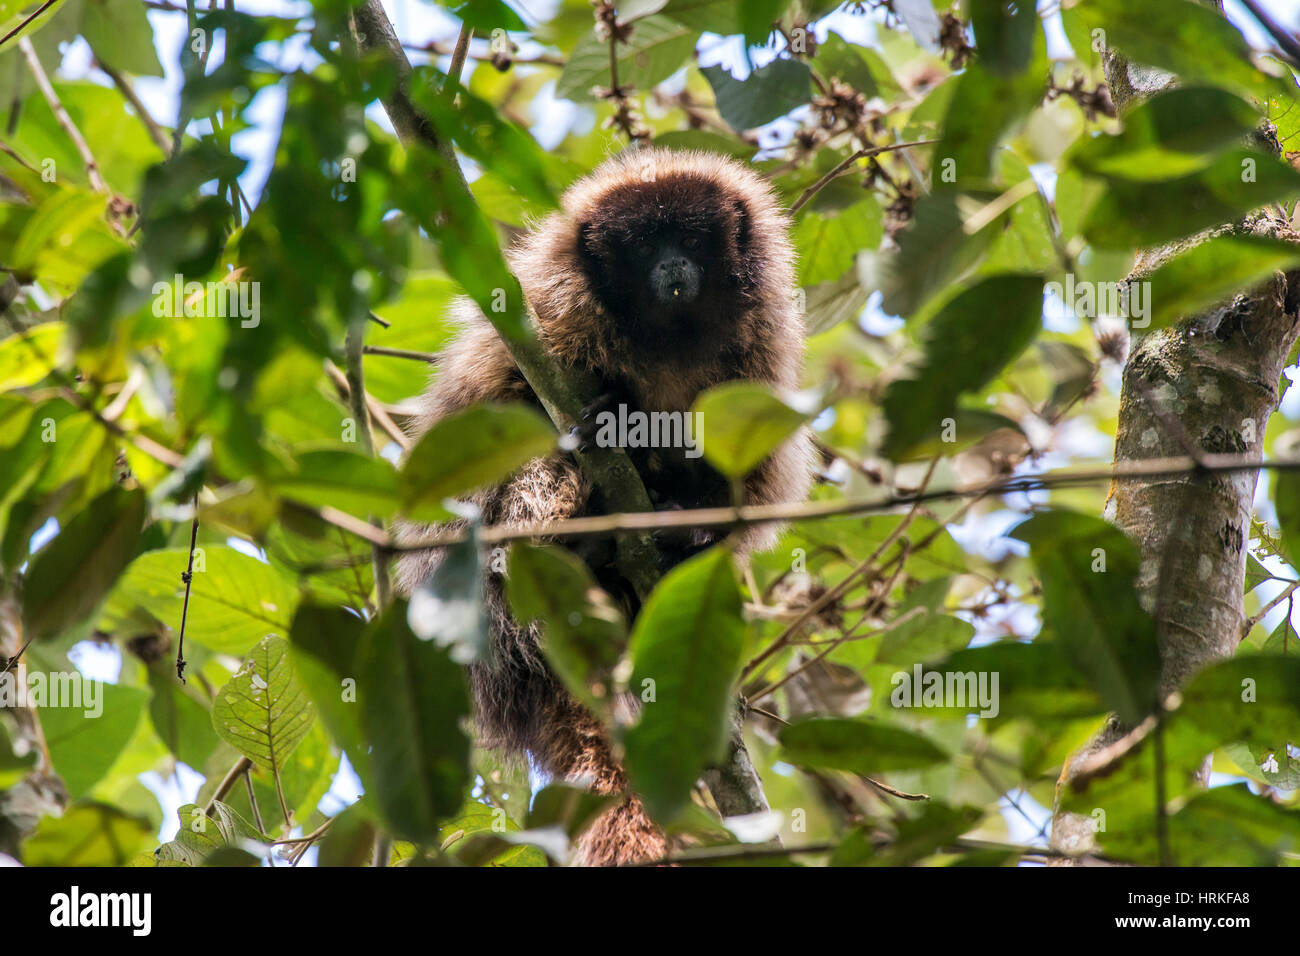 Masked mono tití (Callicebus personatus), fotografiado en Santa María de Jetibá, Espírito Santo, Brasil. Bioma del bosque atlántico. Animal salvaje. Foto de stock